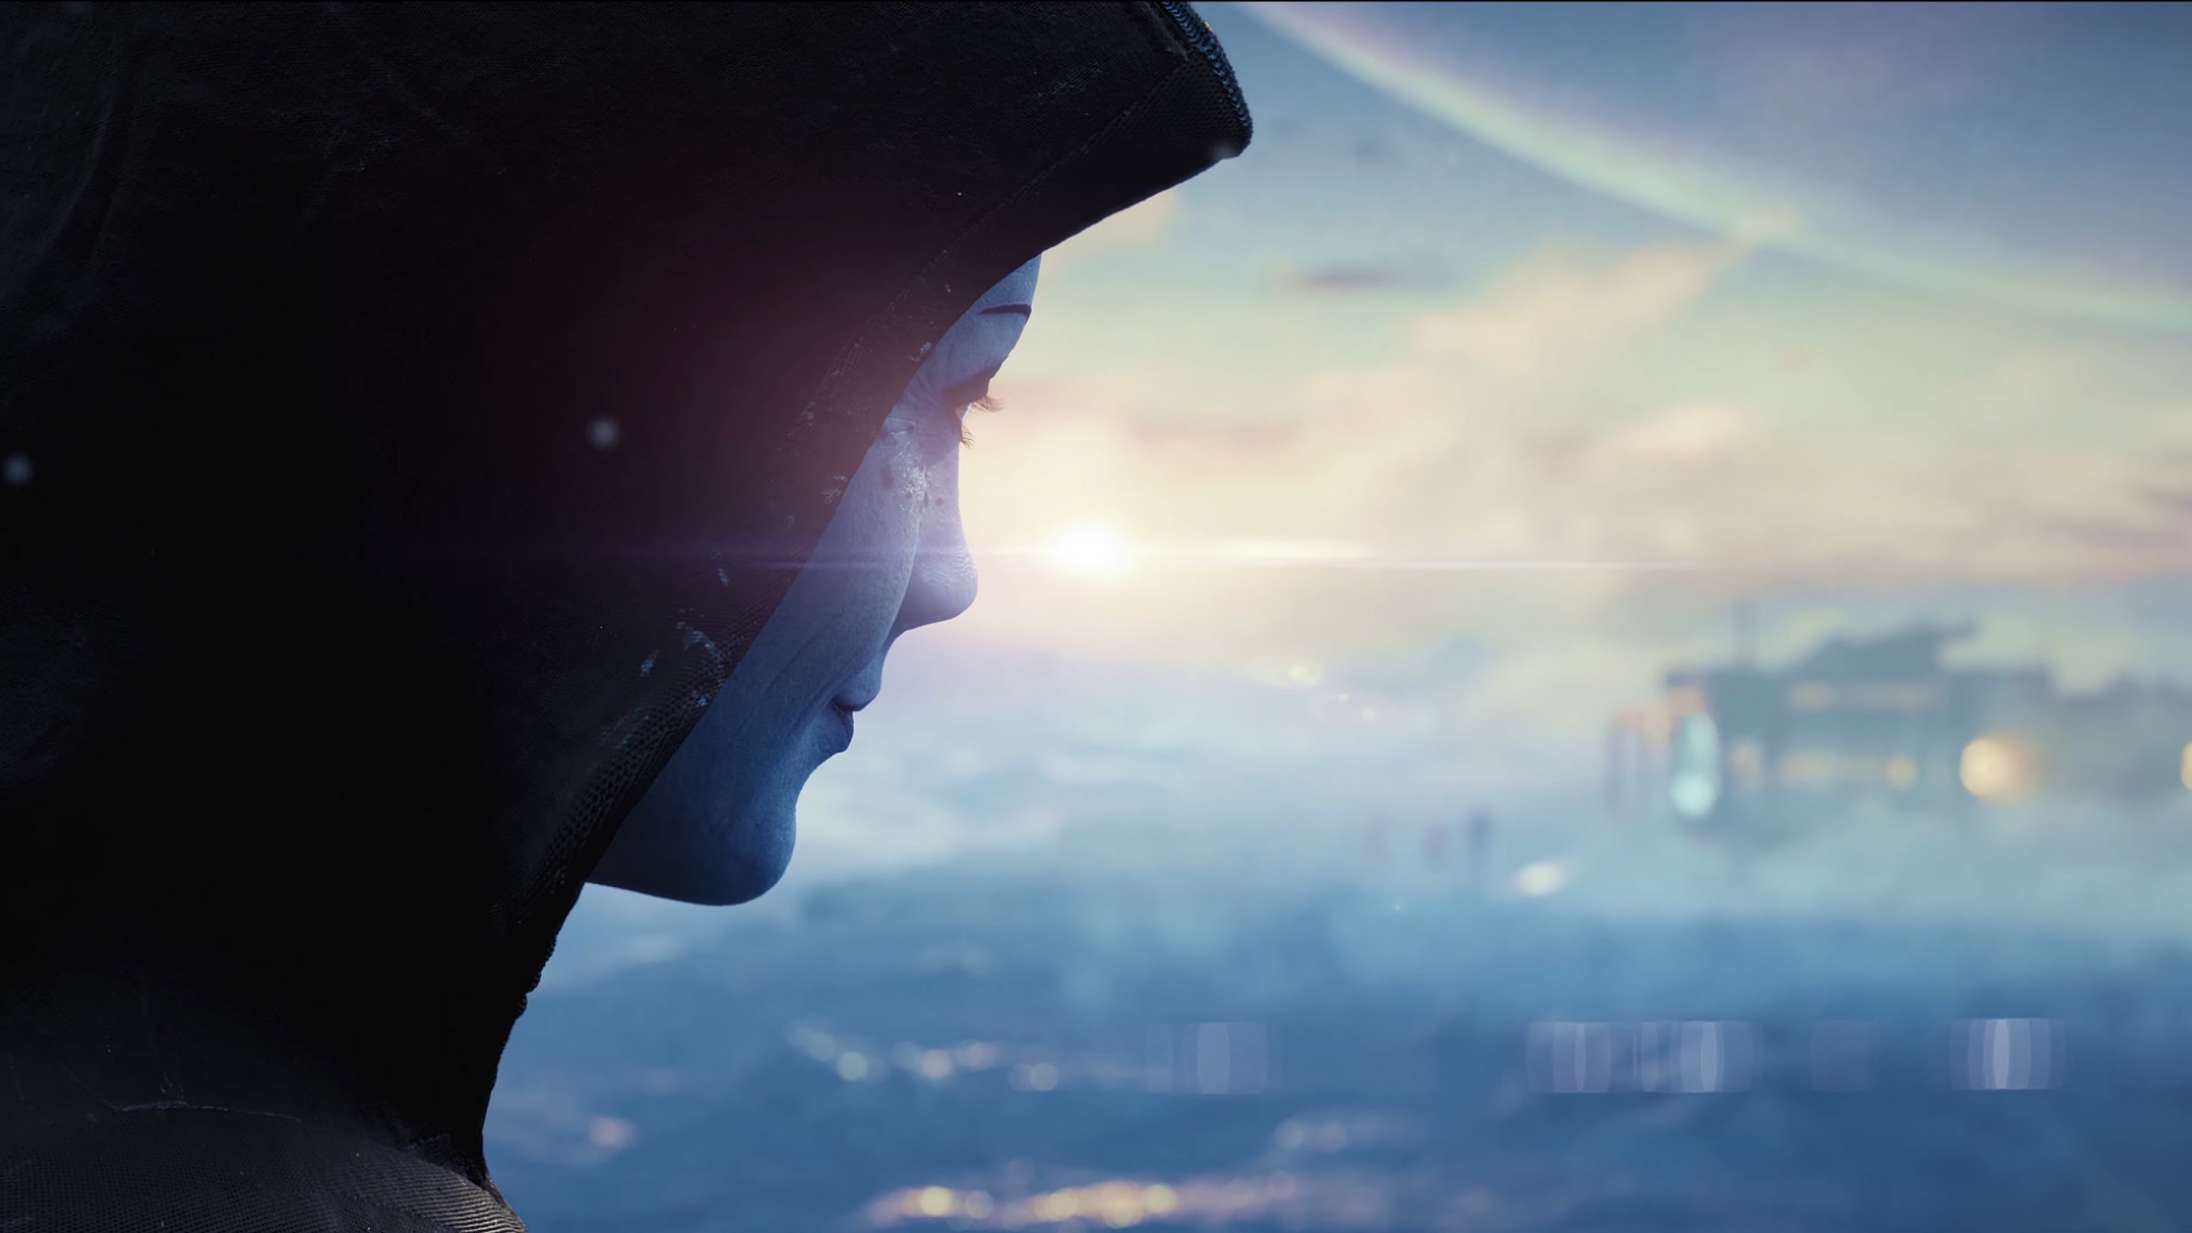 Fra ‘Mass Effect’ til ‘Perfect Dark’: Her er de største annonceringer og overraskelser fra The Game Awards 2020